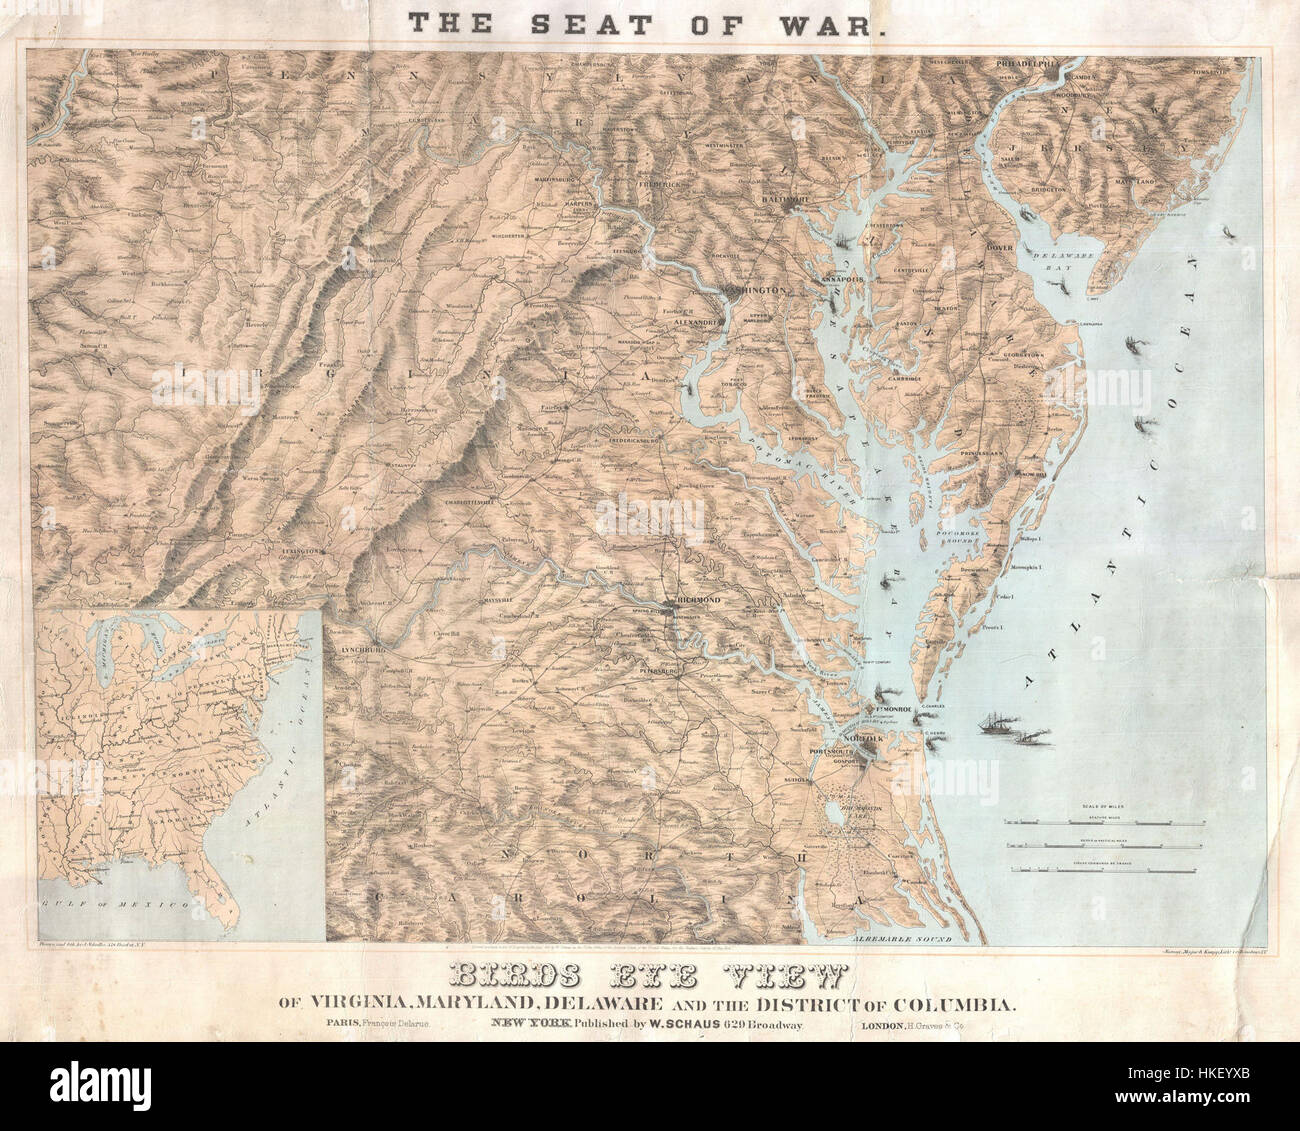 1861 Schaus Bird's Eye View Mapa de Virginia, Delaware y Carolina del Norte (asiento de guerra) Geographicus SeatofWar schaus 1861 Foto de stock